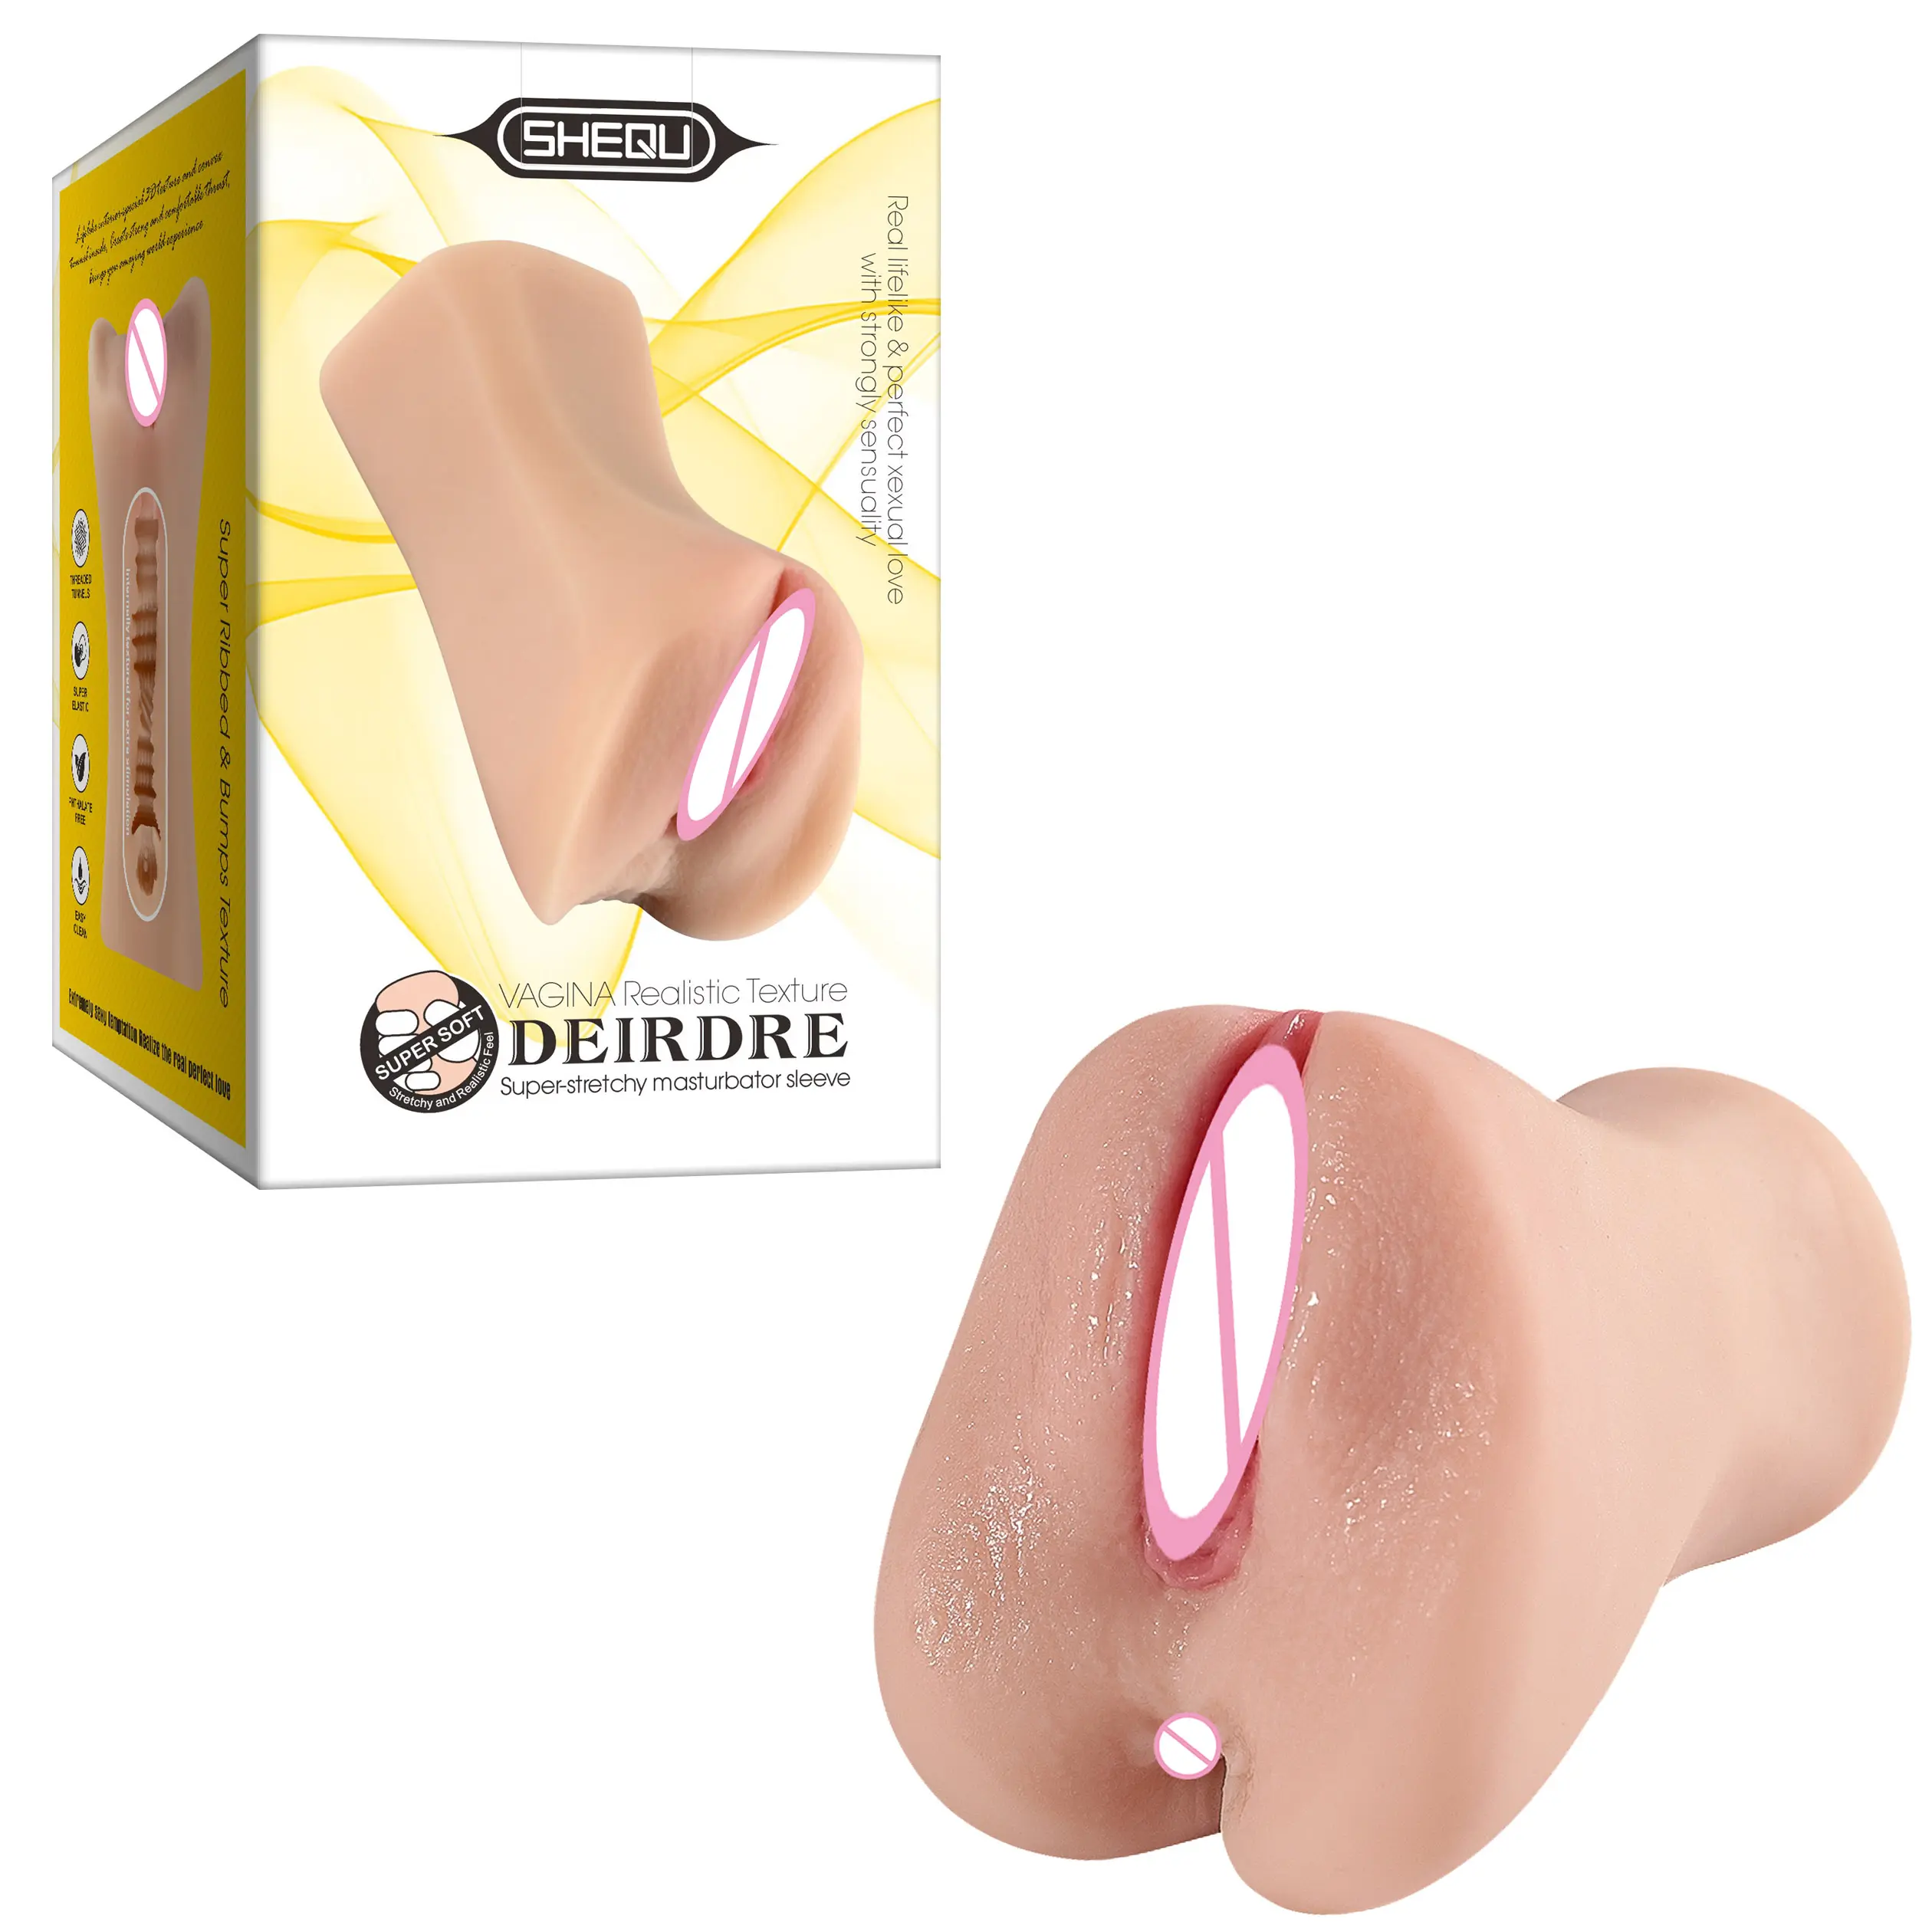 XISE Mini Sex Puppe mit realistischen strukturierten engen Anus und Mund Vagina Mastur bator Deep Throat Oral Adult Sexspielzeug für Männer